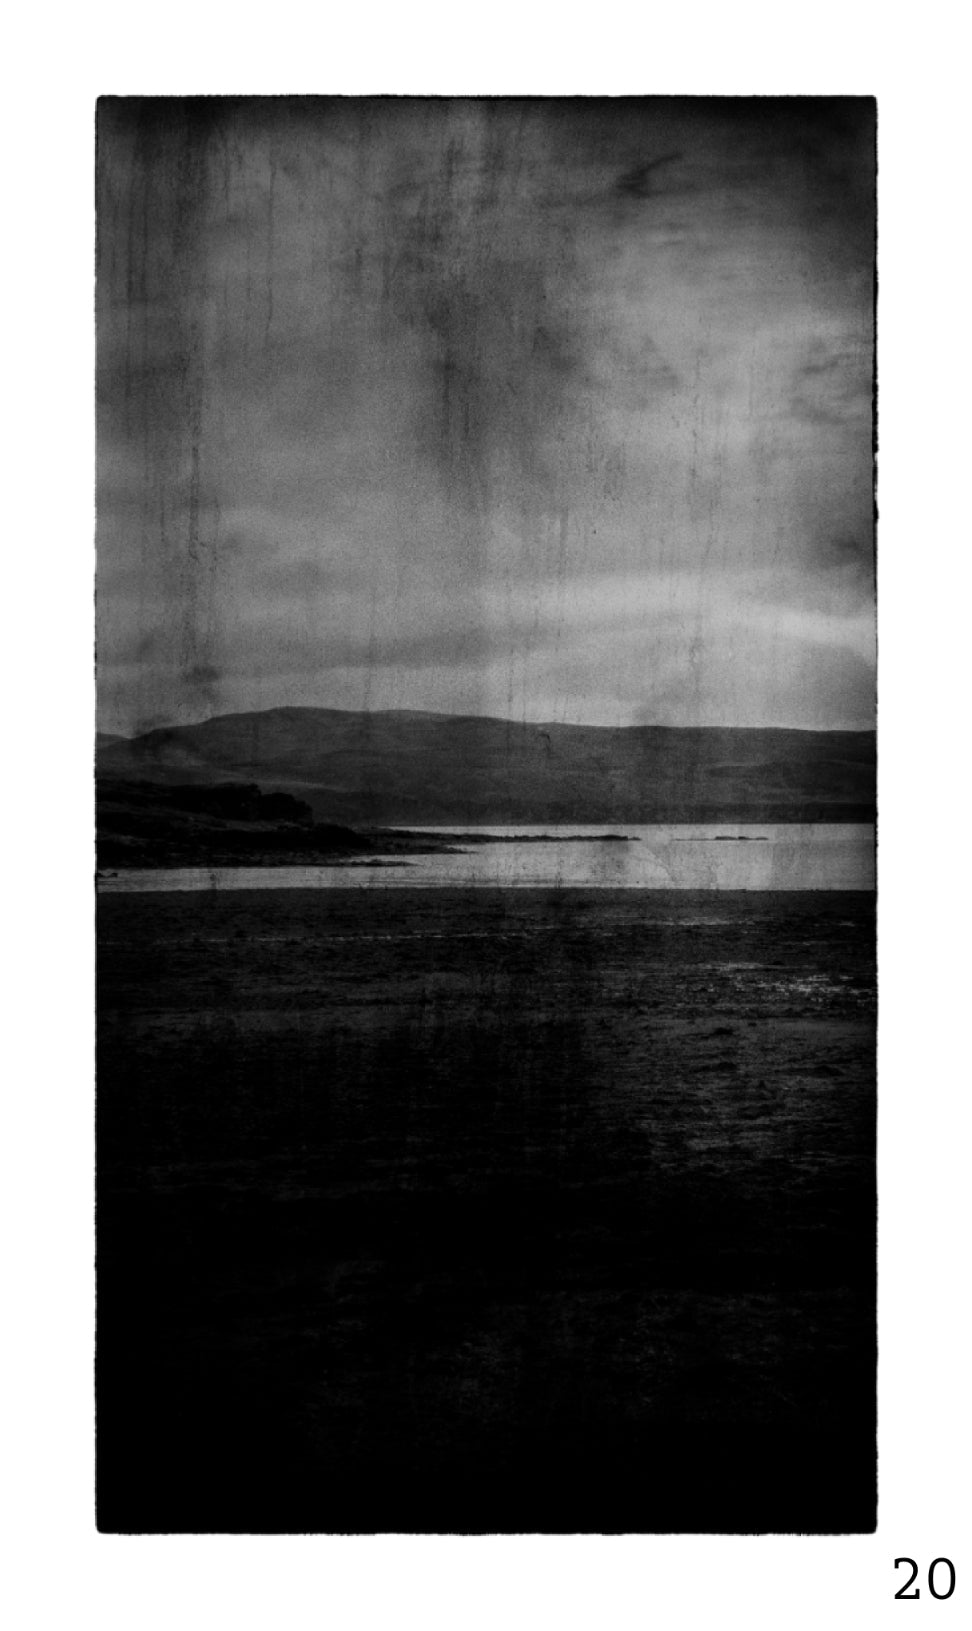 Guy Dickinson A Shadow Passes A2 print (SKYE_20) at Bard Scotland.